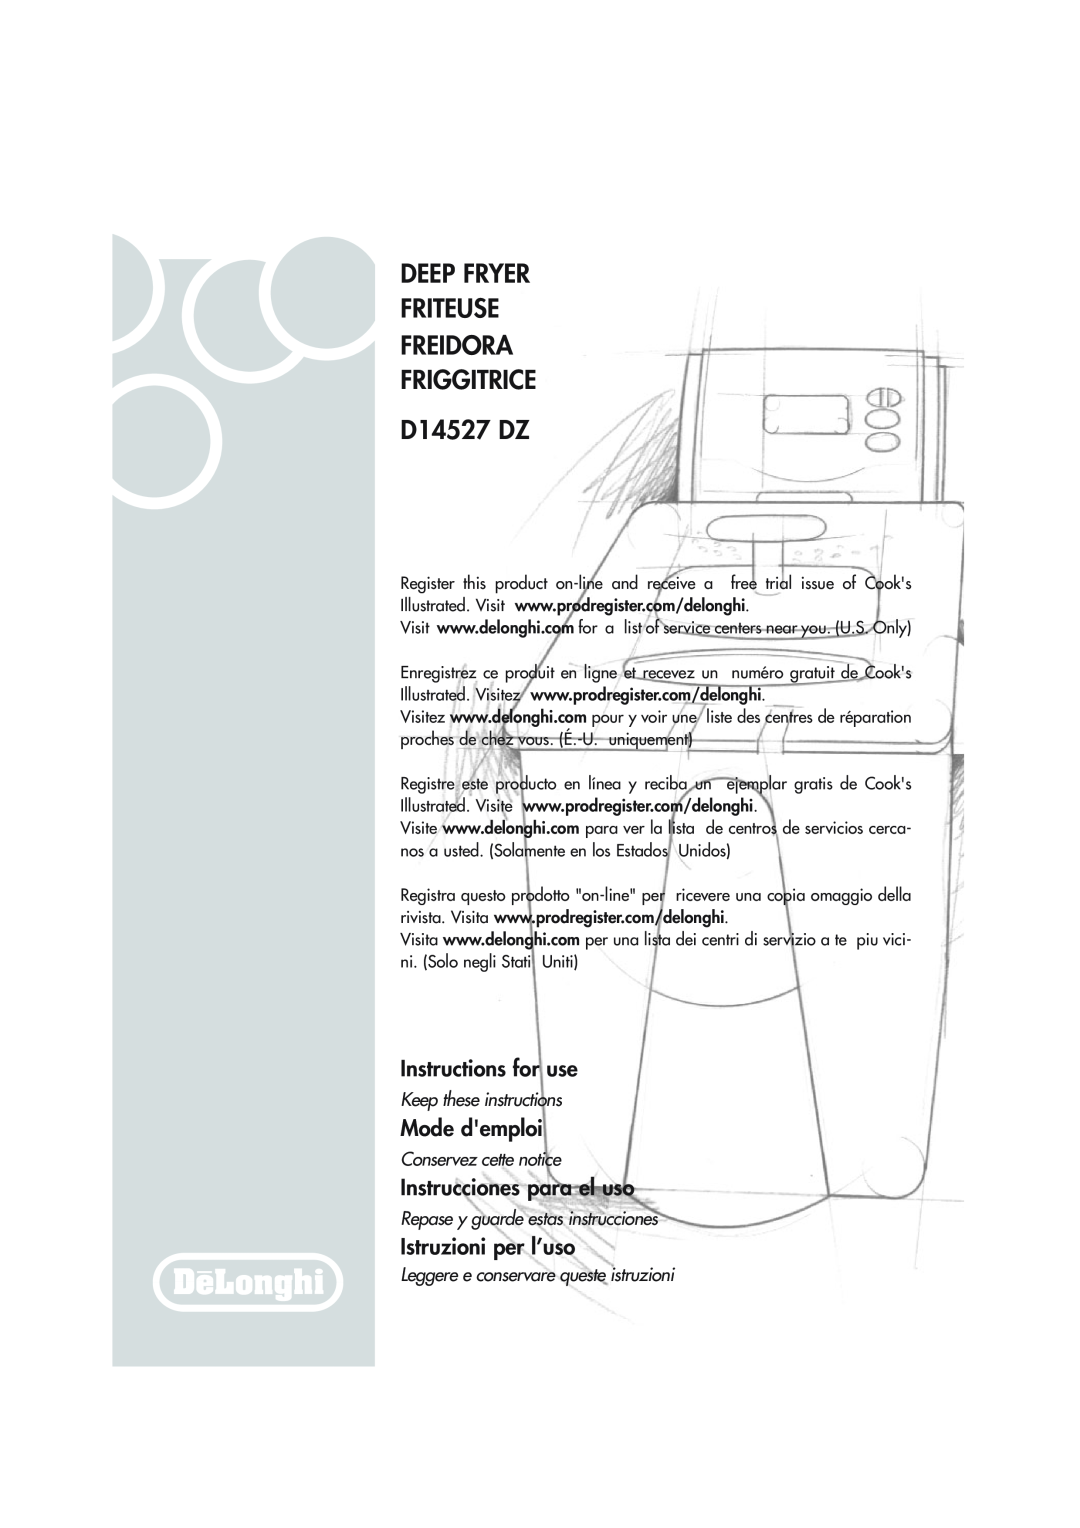 DeLonghi D14527DZ manual Deep Fryer Friteuse Freidora Friggitrice, D14527 DZ, Instructions for use, Mode demploi 